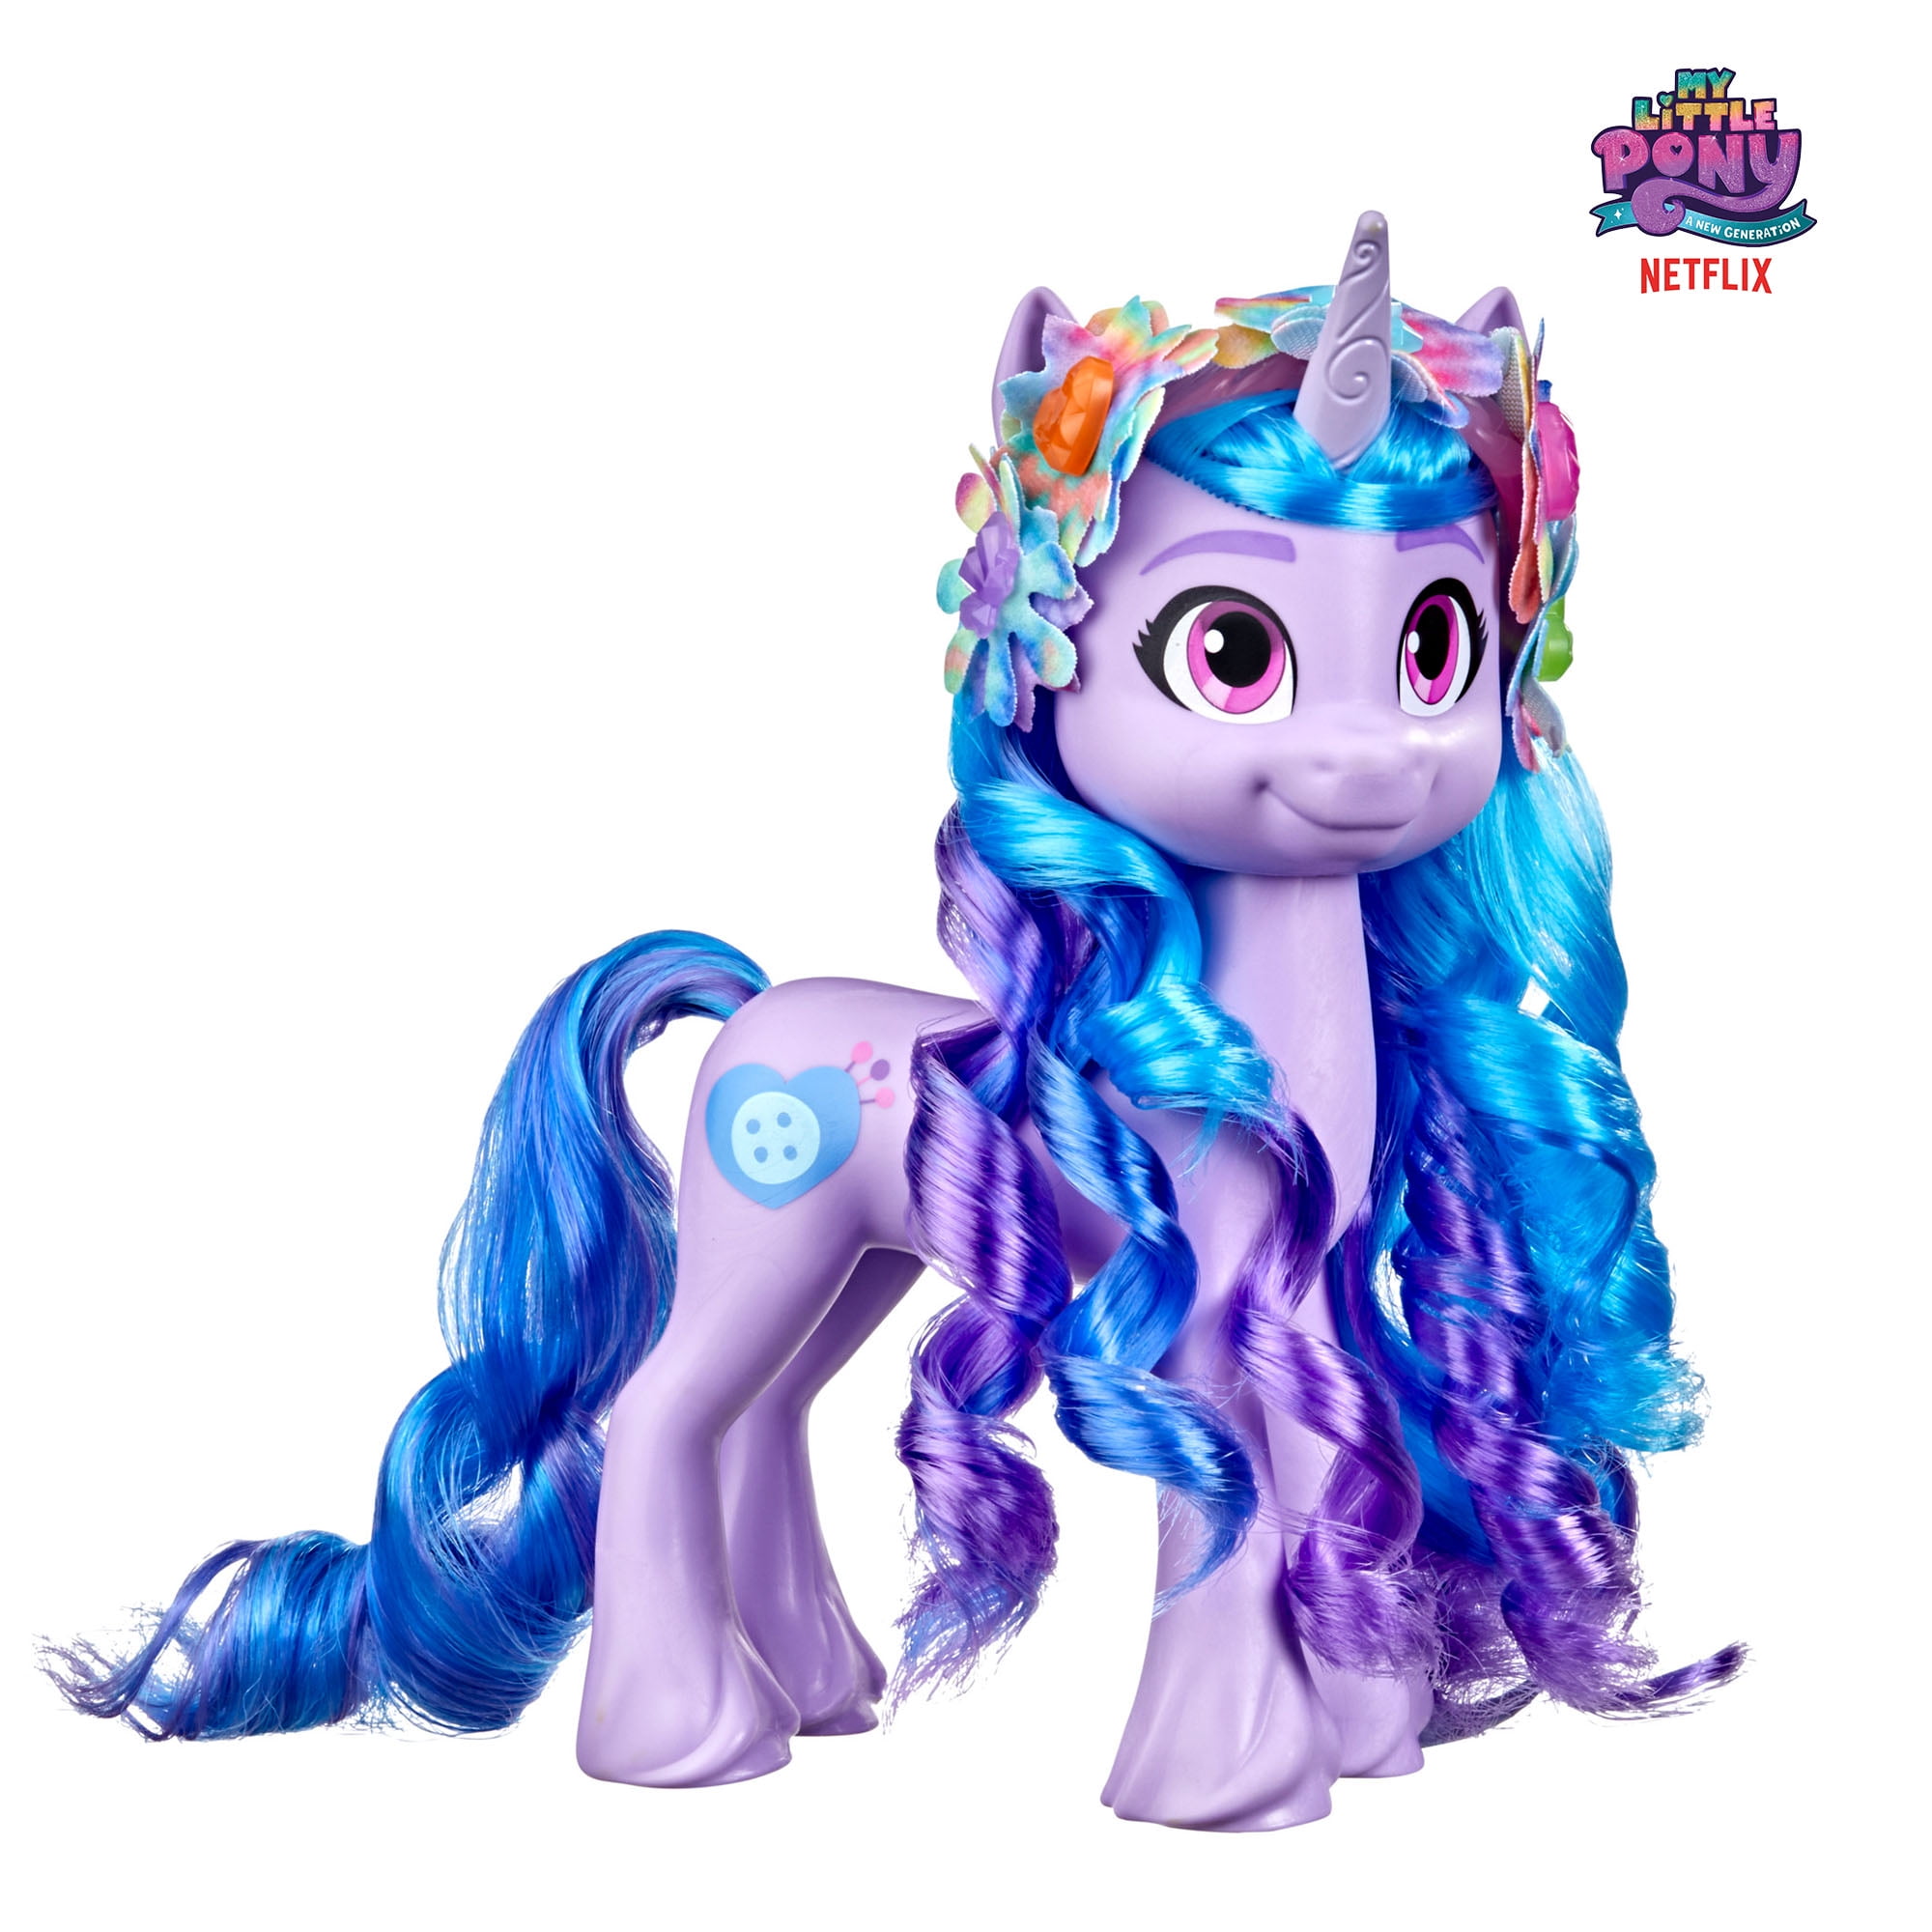 Plastic Unicorn Figurine Toy 3" Tall White & Blue One Raised Hoof